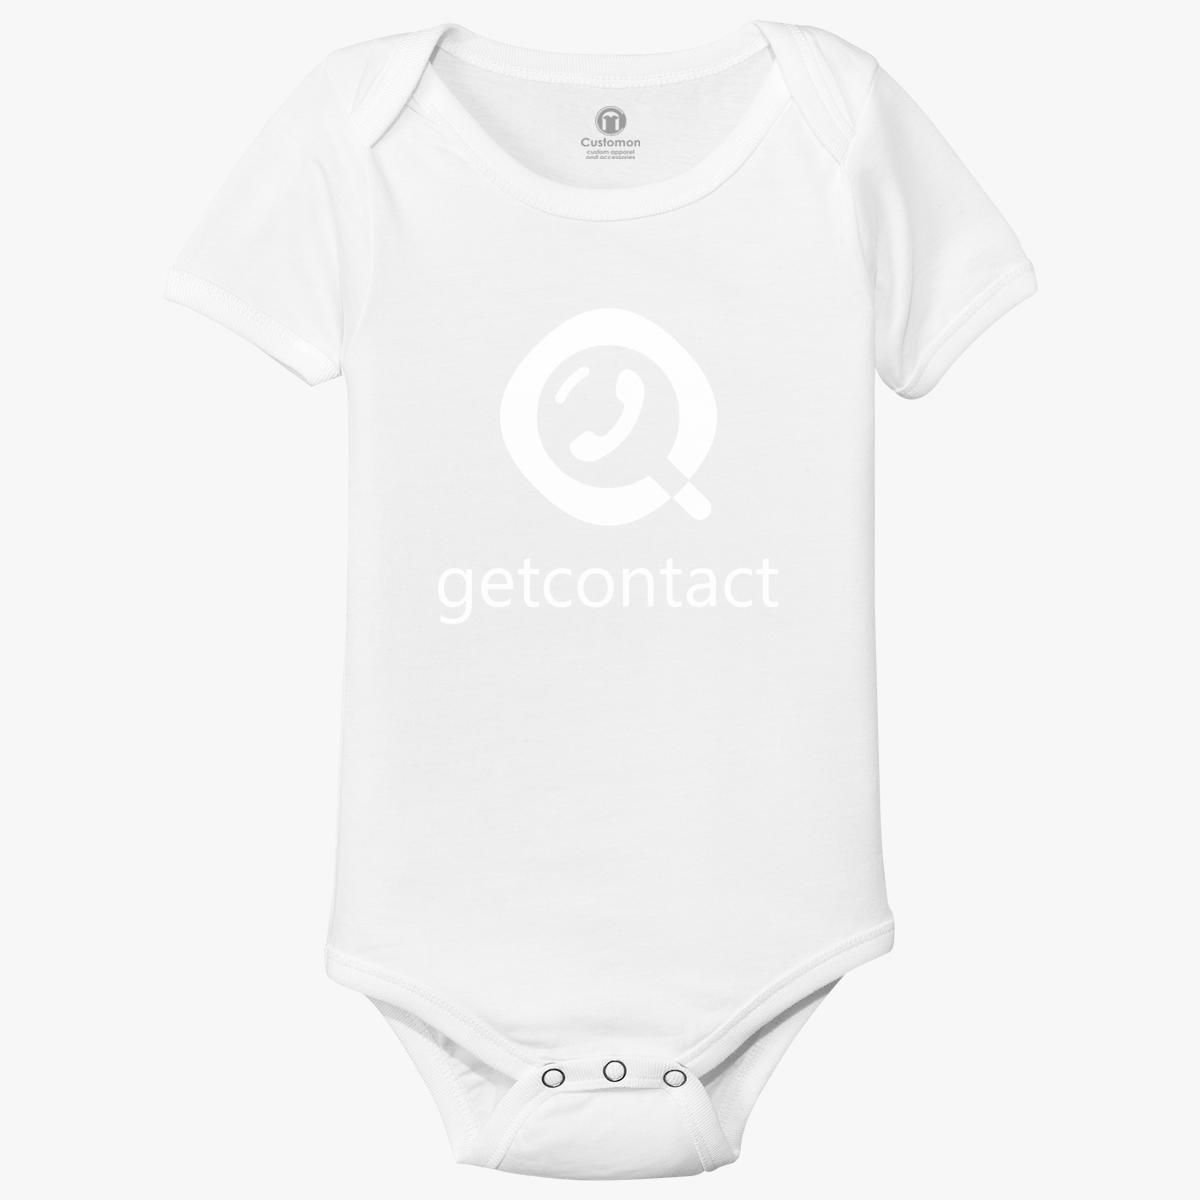 getcontact logo Baby Onesies - Customon